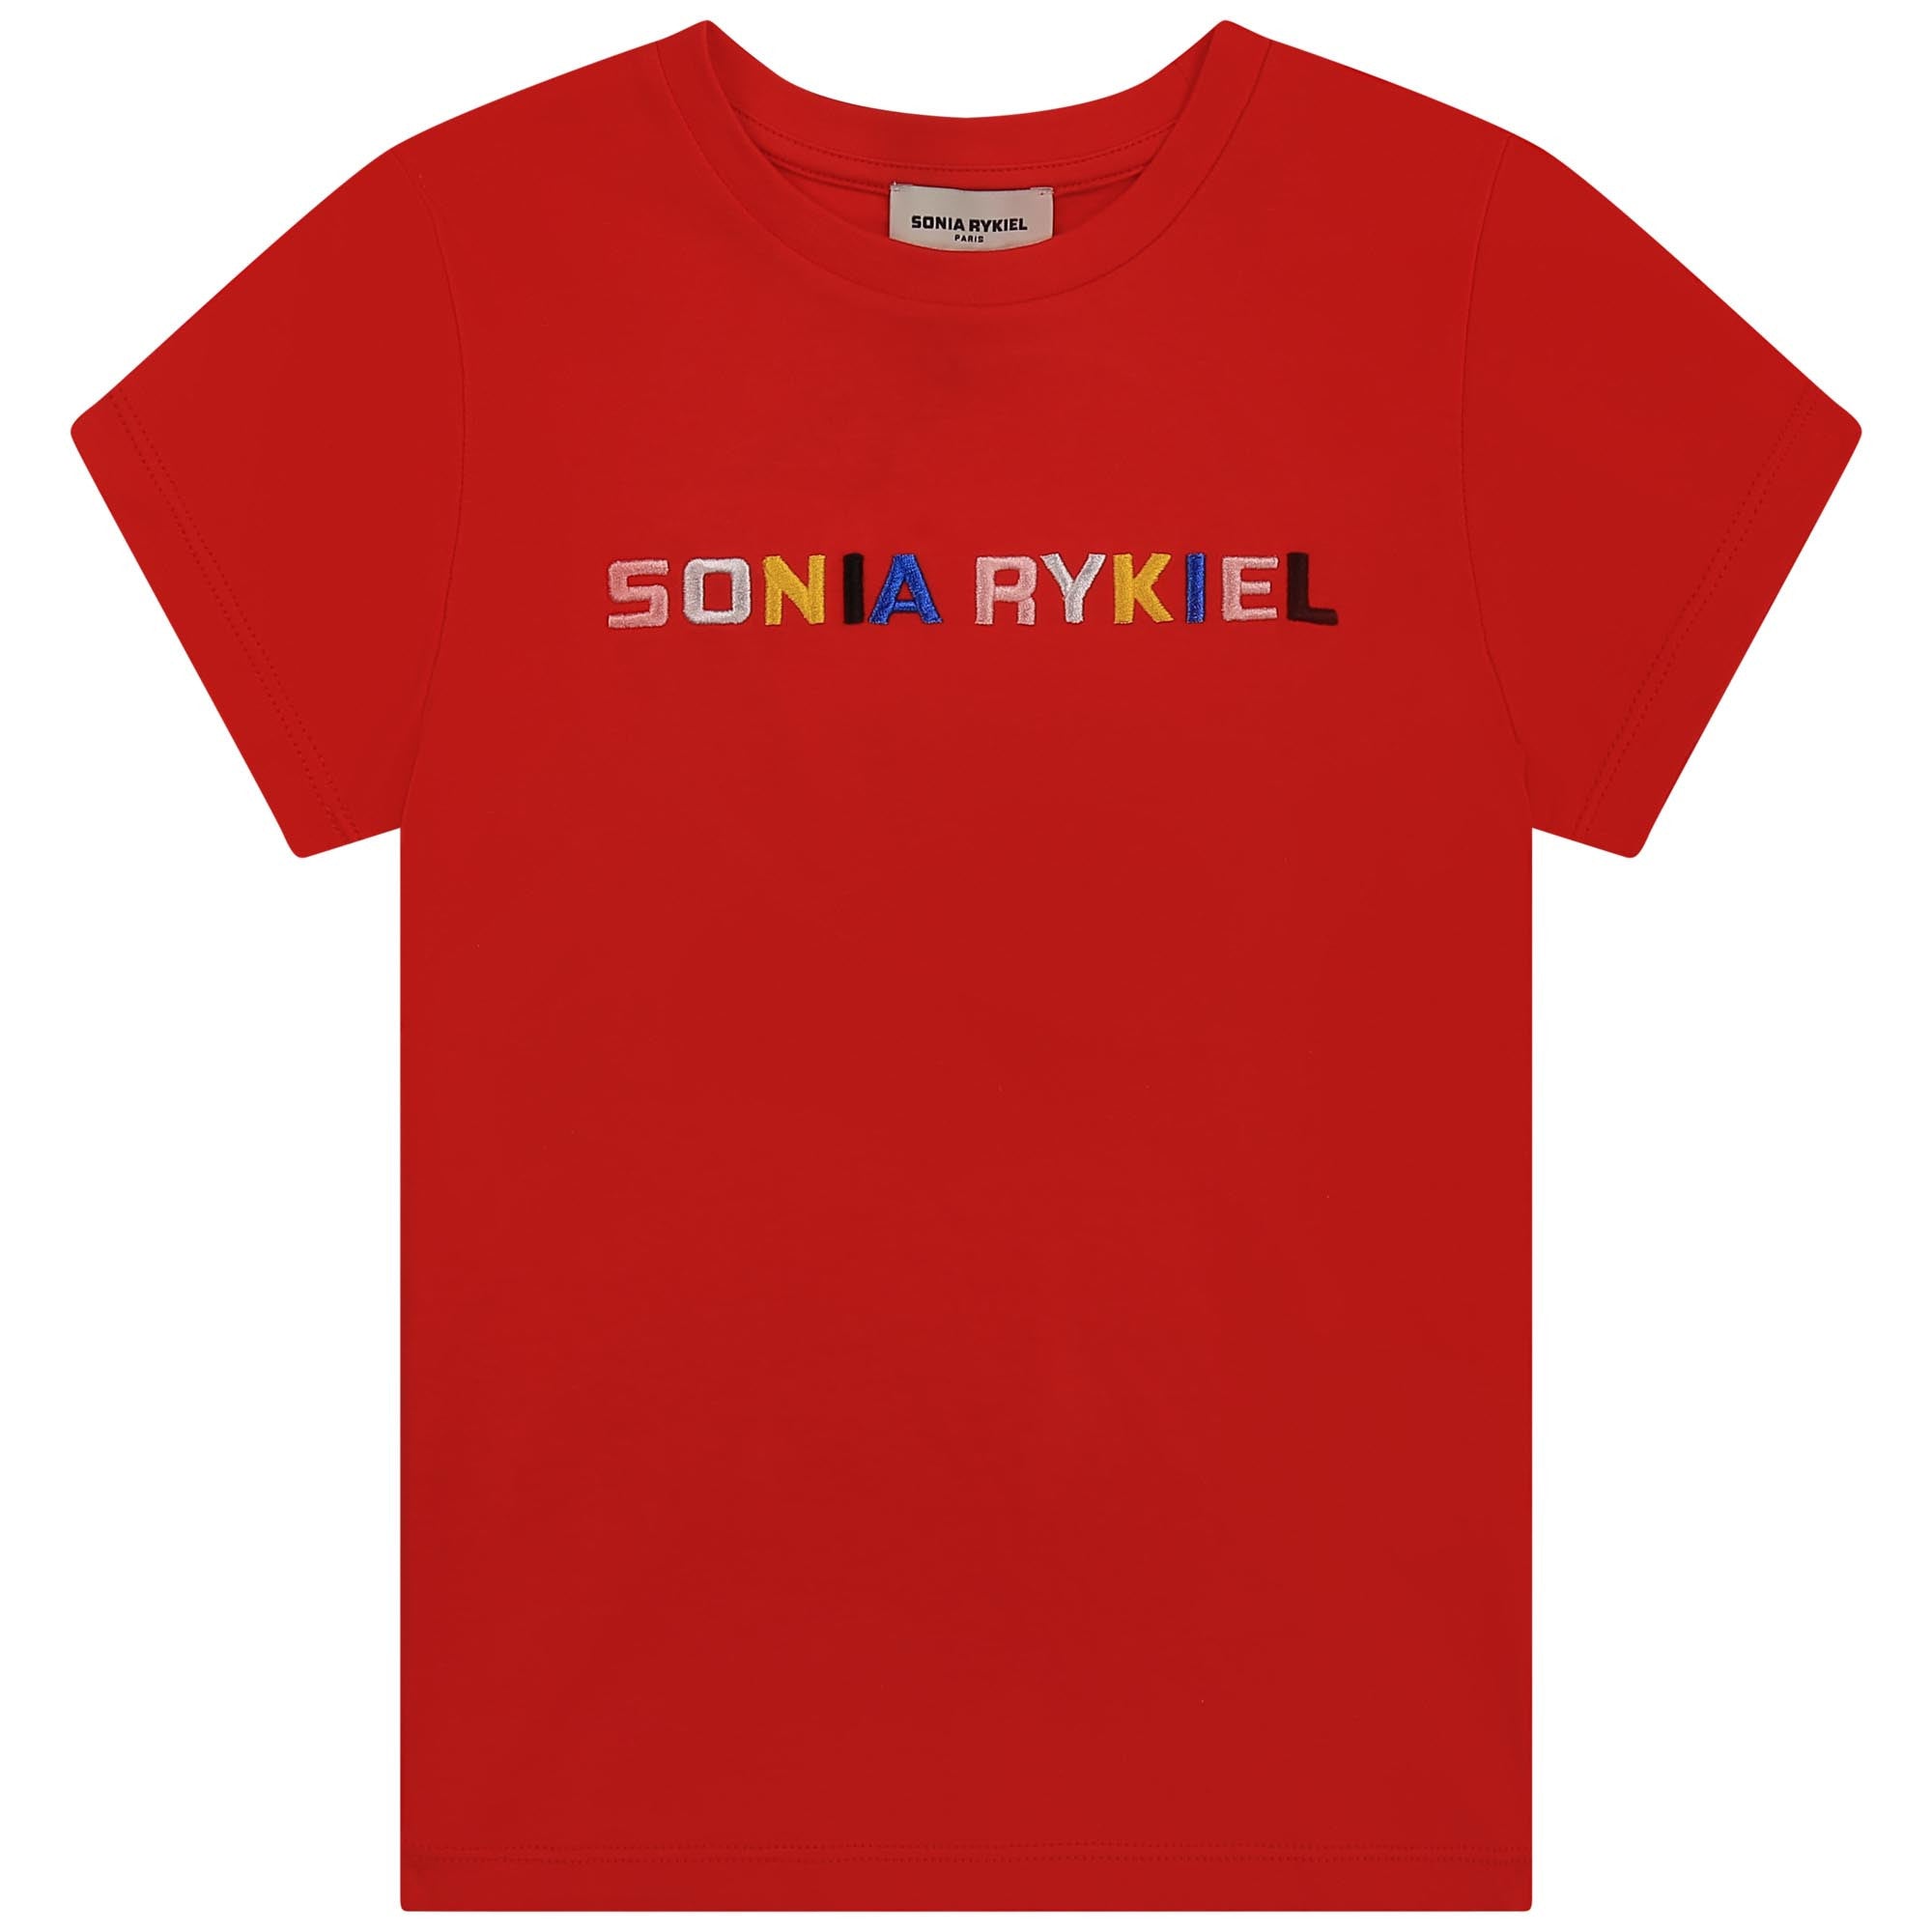 Sonia Rykiel Girl T-shirt